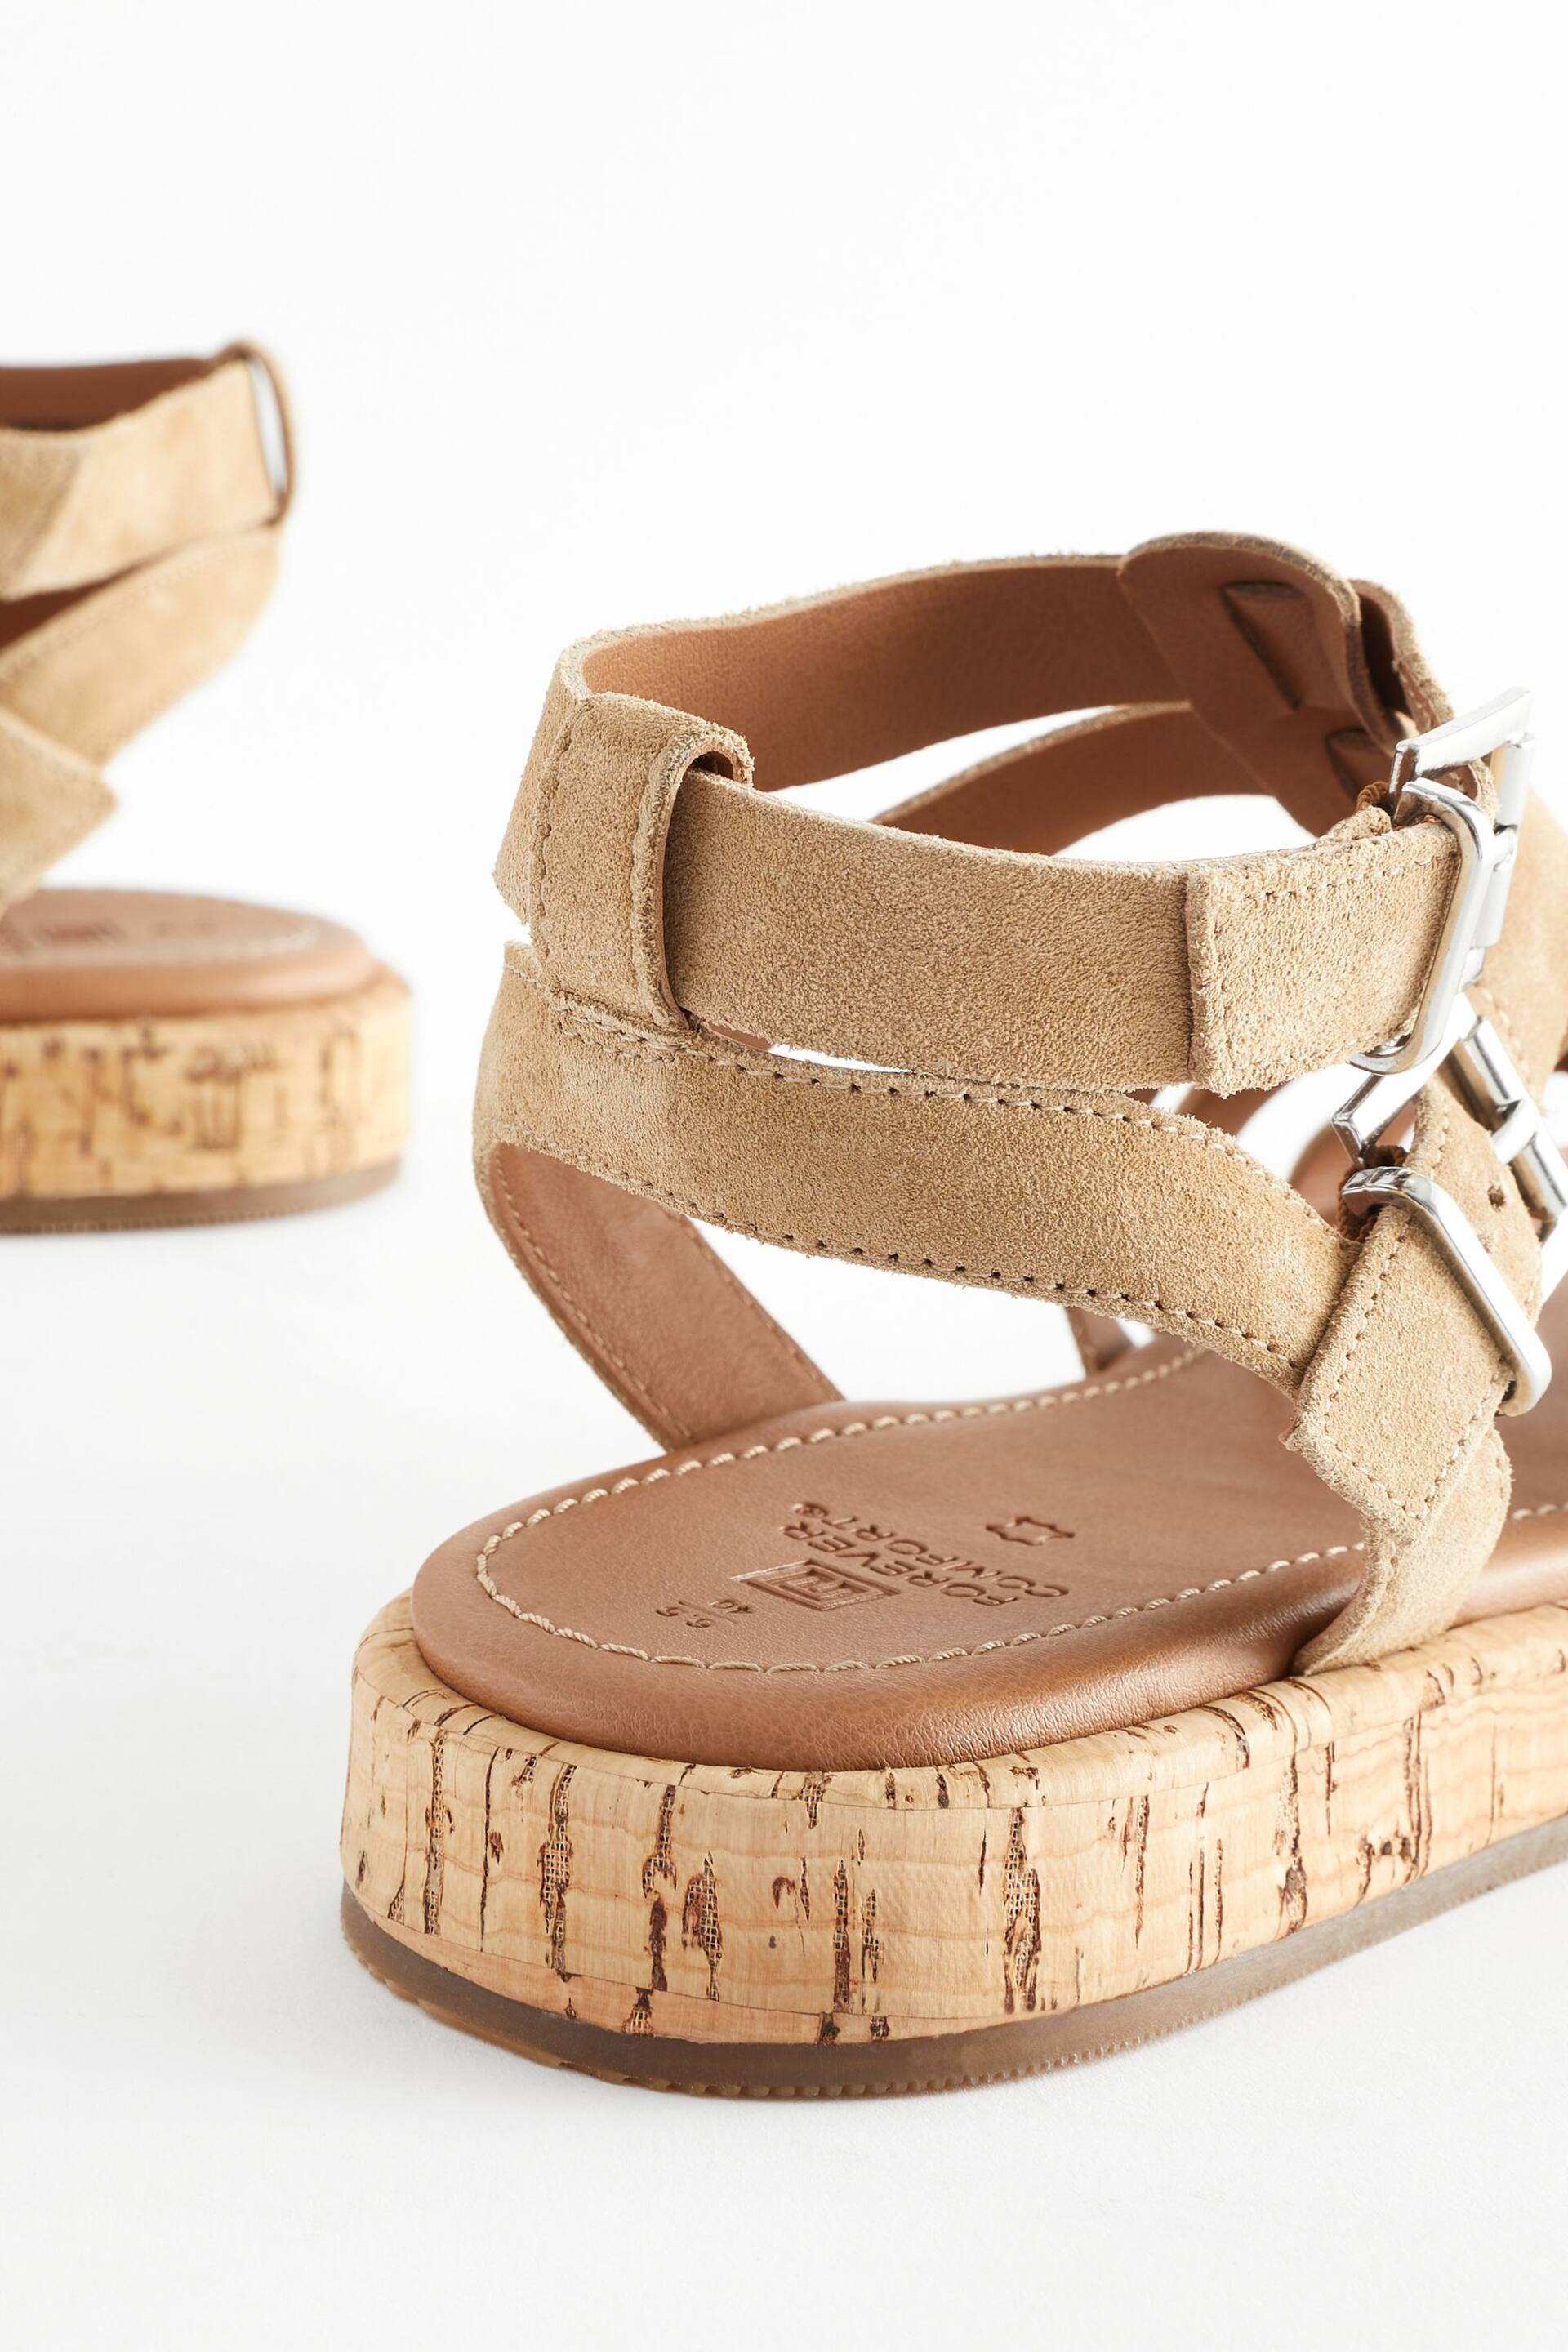 Sand Brown Regular/Wide Fit Forever Comfort® Leather Gladiator Sandals - Image 4 of 6